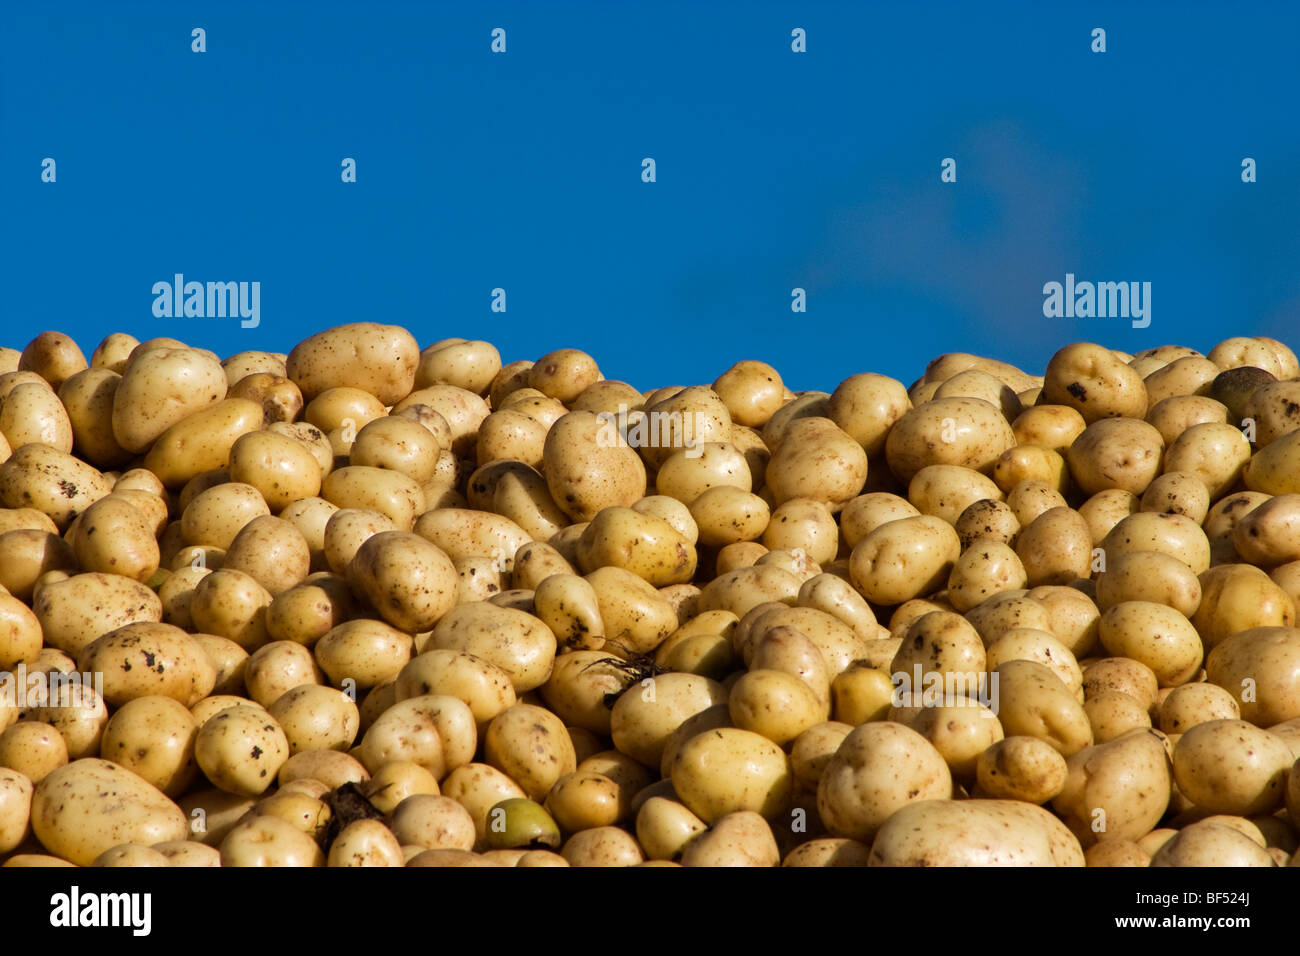 Agriculture - Pommes de terre Russet fraîchement récolté / Bassin Klamath, Oregon, USA. Banque D'Images